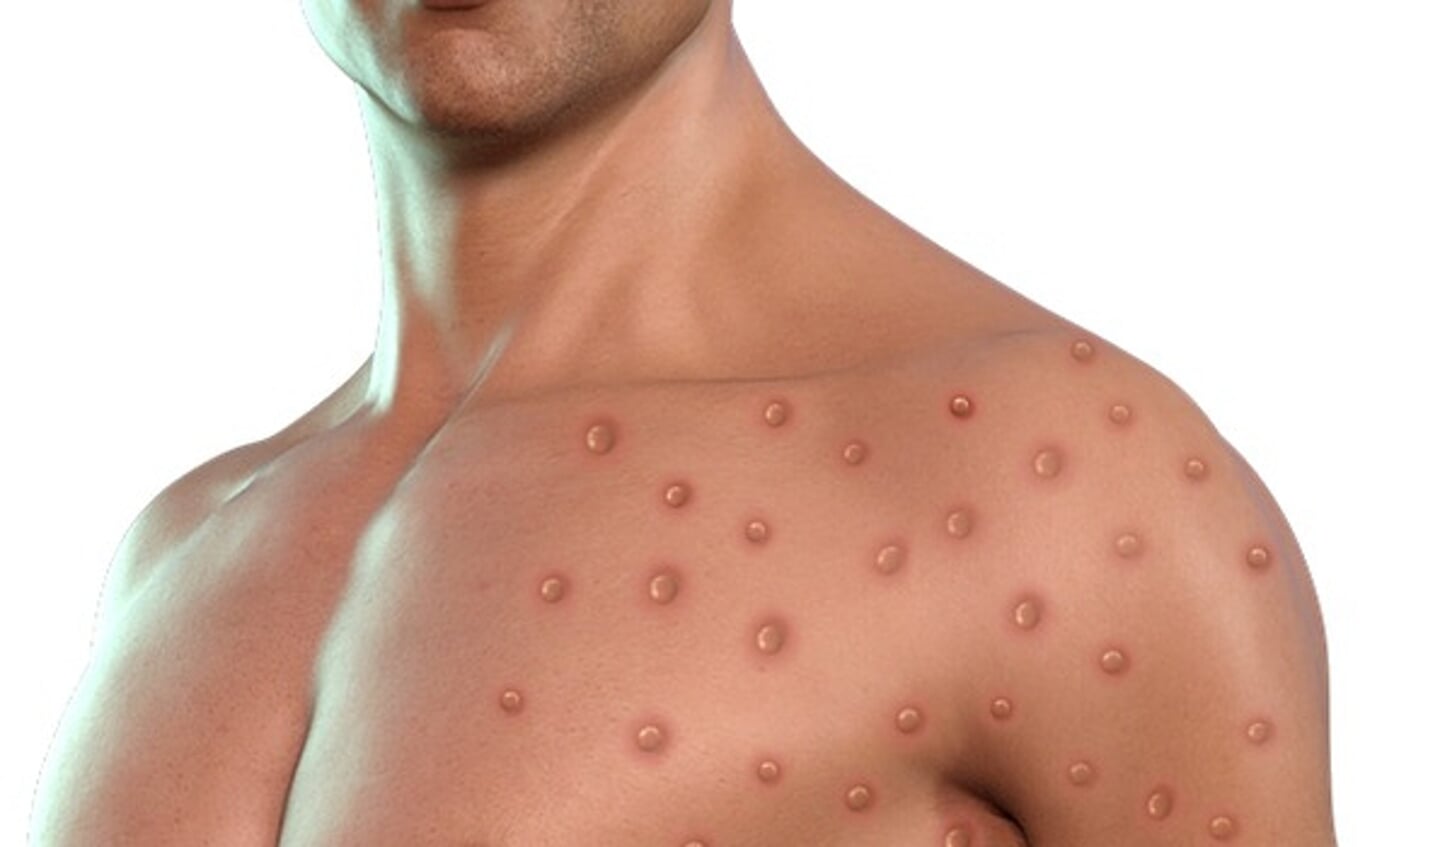 Dit is een digitaal bewerkte foto waarop een impressie van blaasjes op de huid als gevolg van besmetting met het apenpokkenvirus wordt gegeven